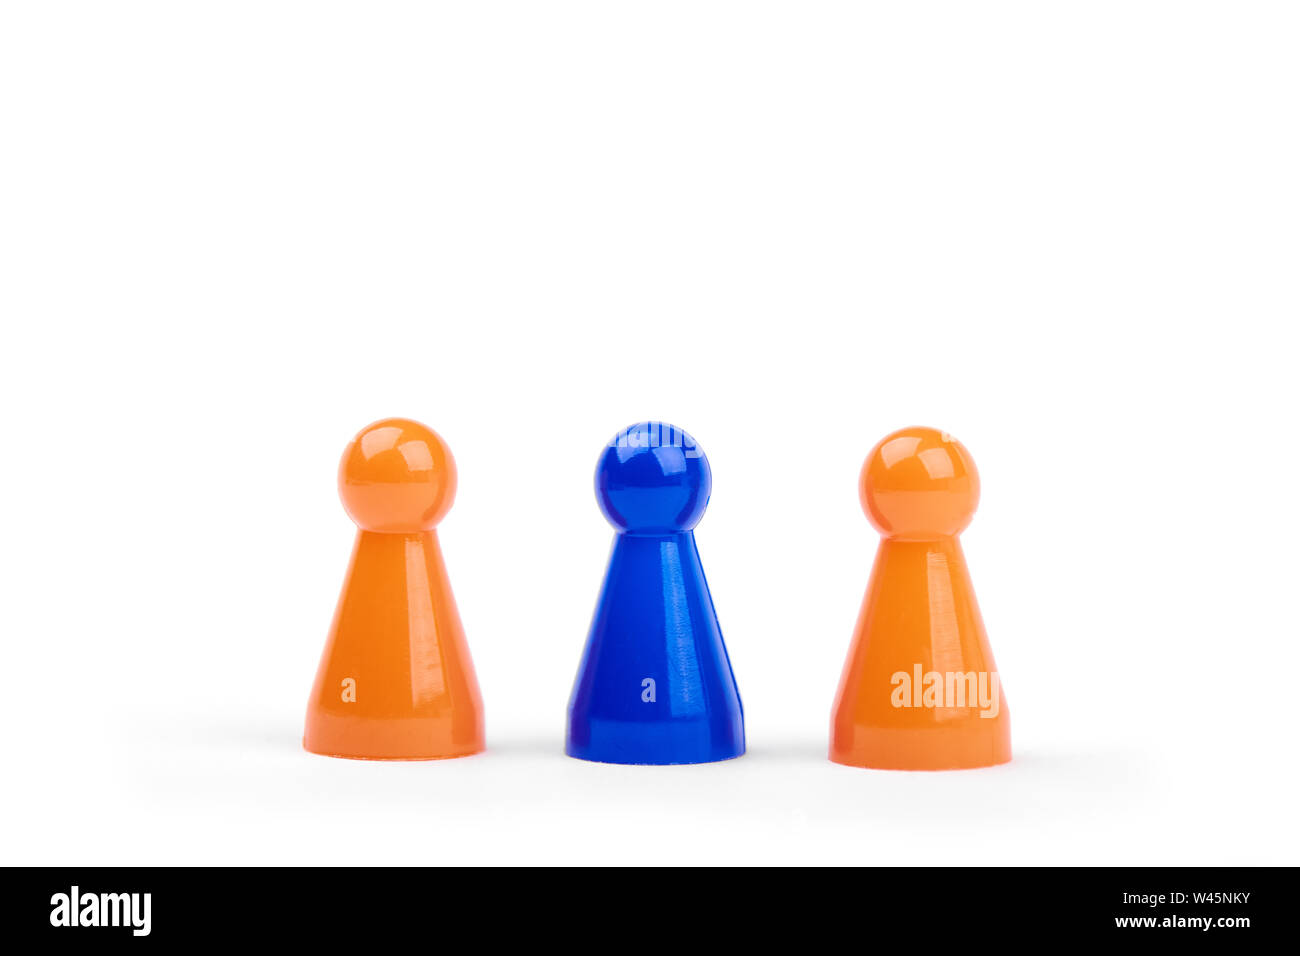 Jugar tres figuras de plástico. Dos naranja y uno diferente, aislado de figurillas azul sobre fondo blanco. Foto de stock